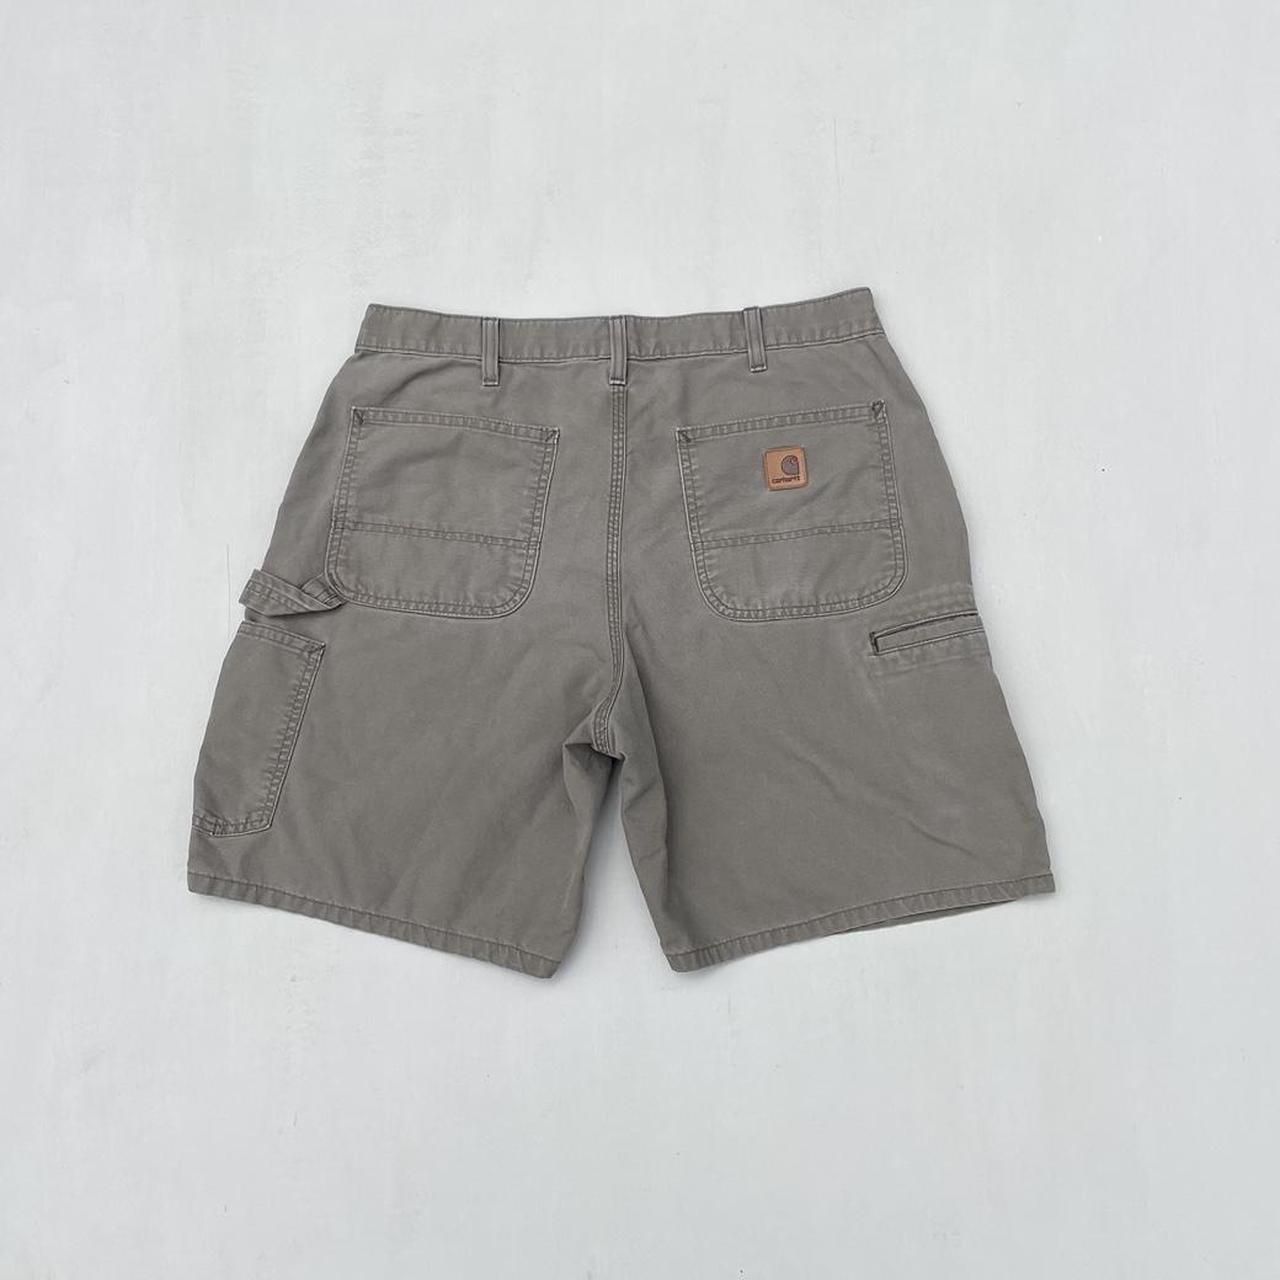 Carhartt Men's Tan and Brown Shorts | Depop